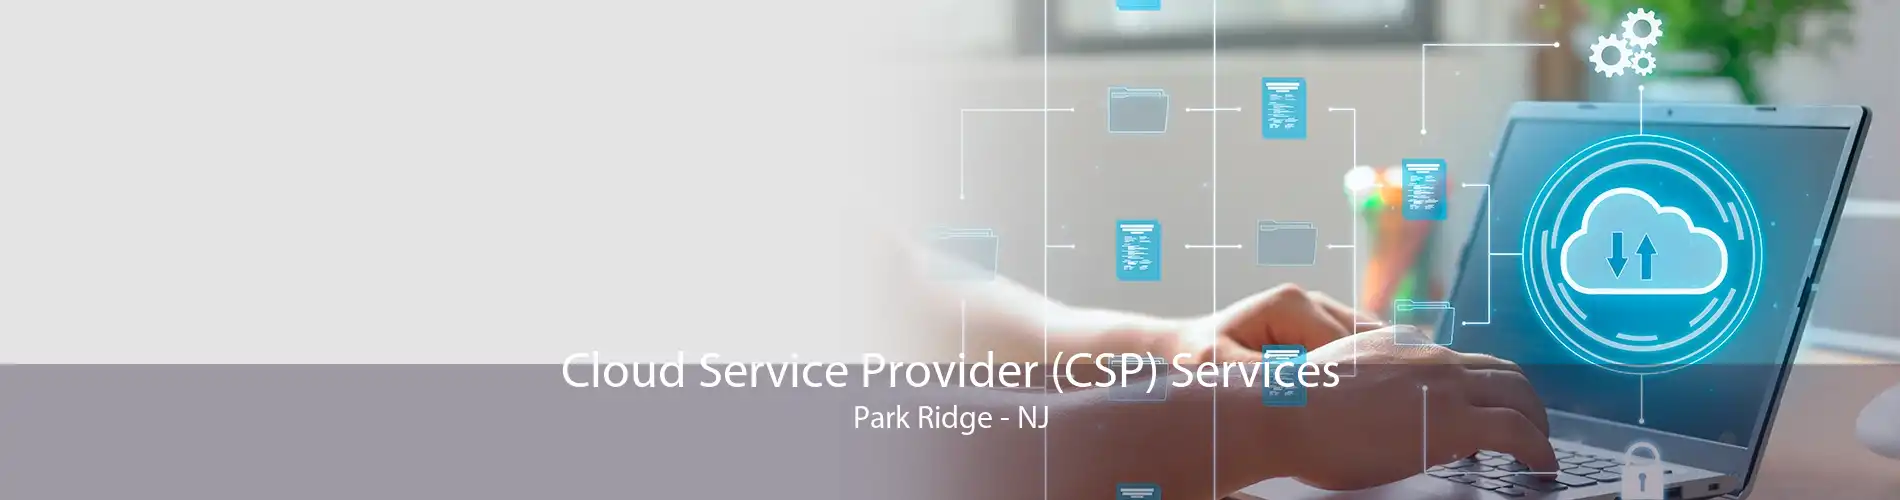 Cloud Service Provider (CSP) Services Park Ridge - NJ